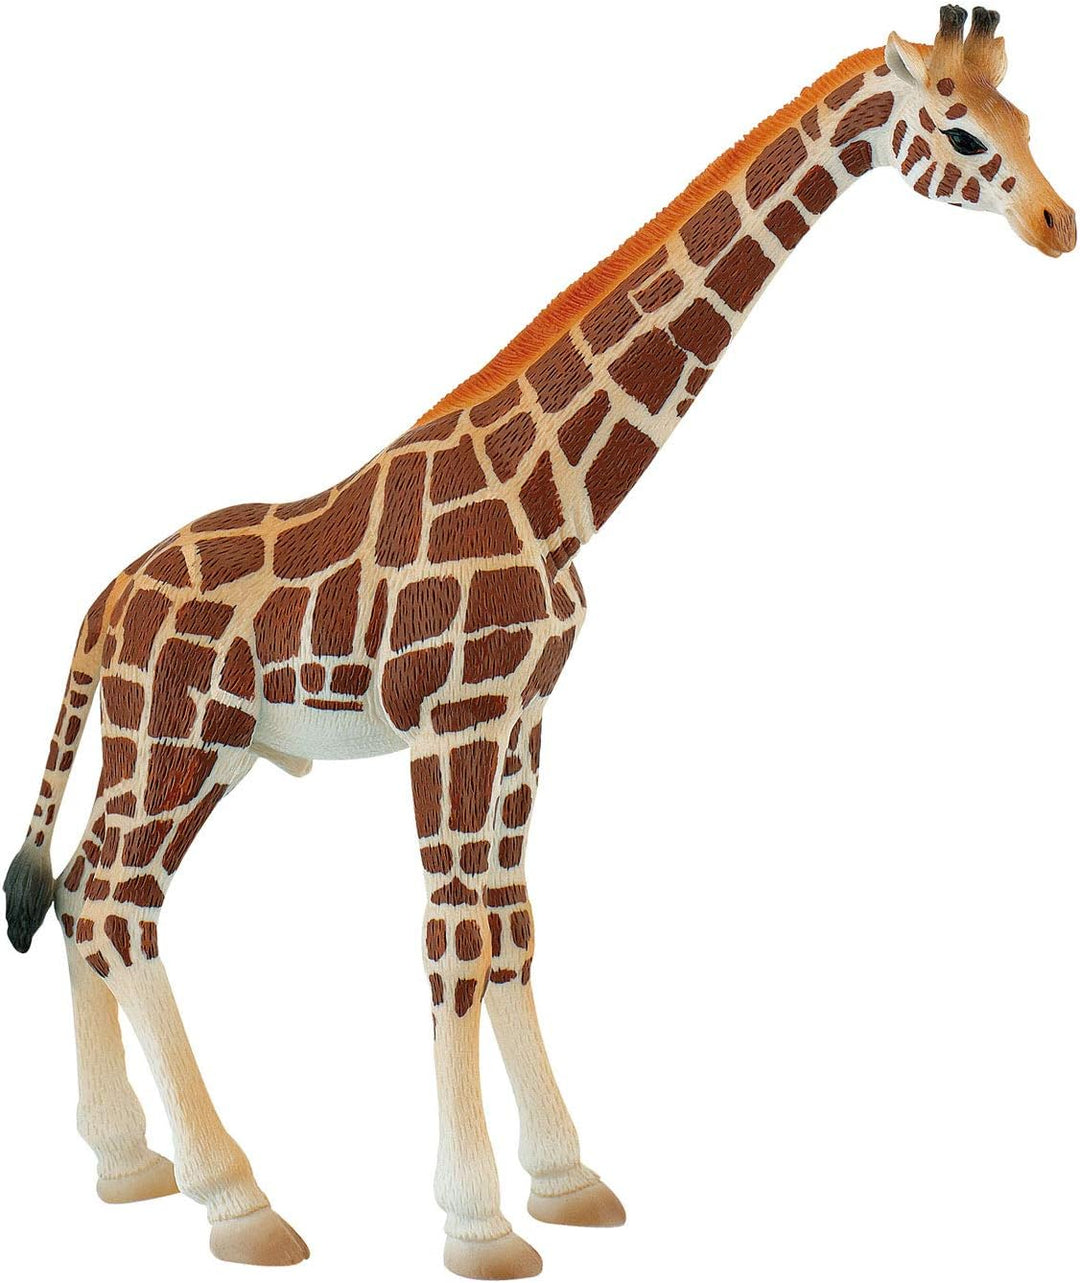 Bullyland 63710" Animal World-Giraffe Bull Figure